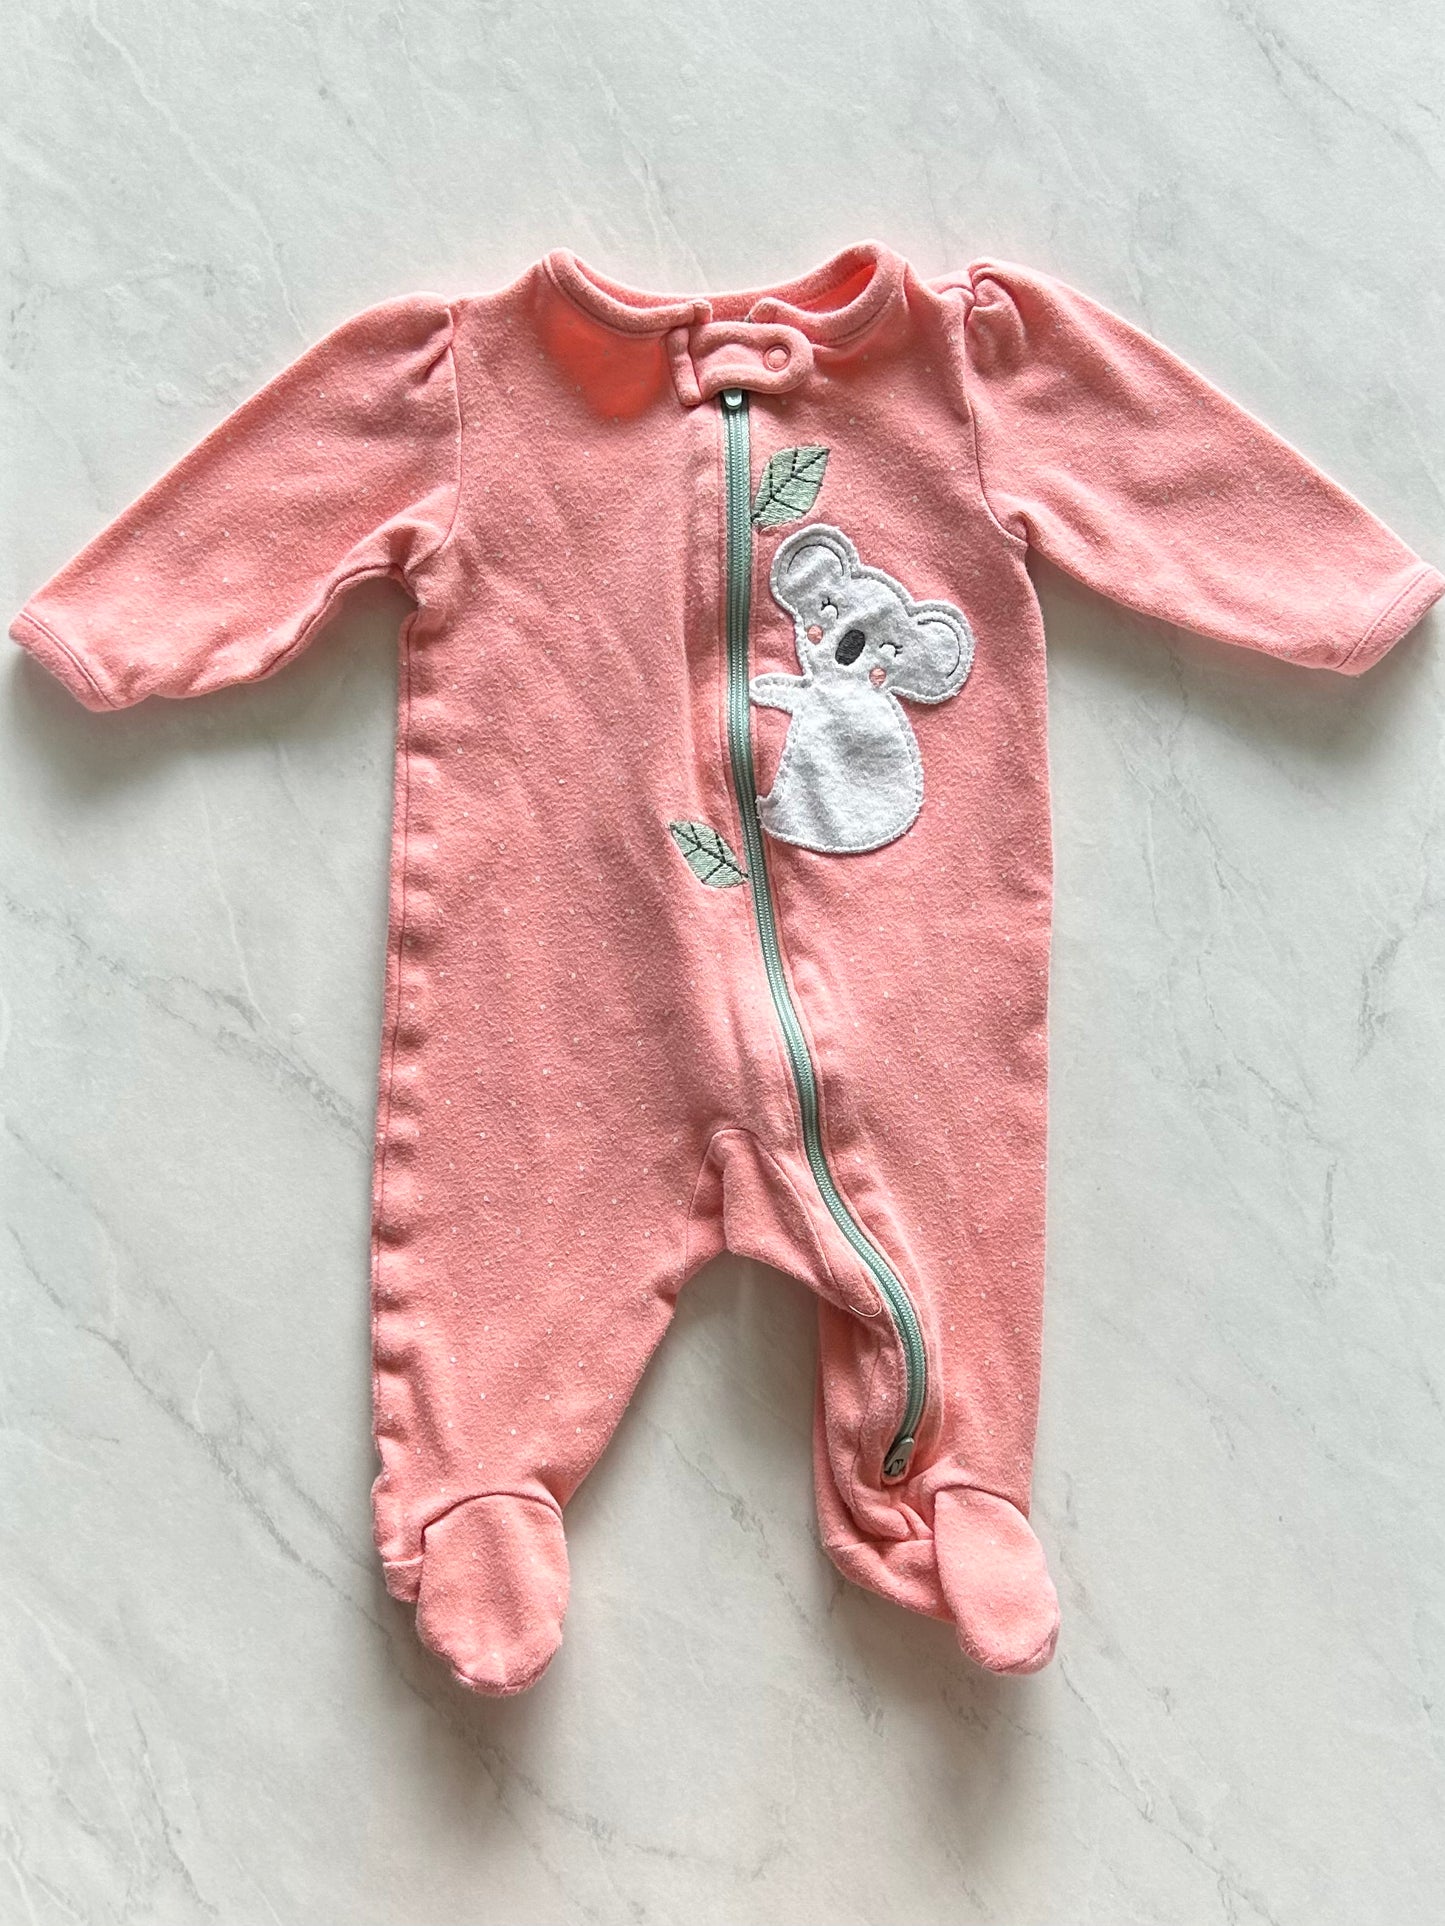 Pyjama à pattes - Child of mine - 0-3 mois